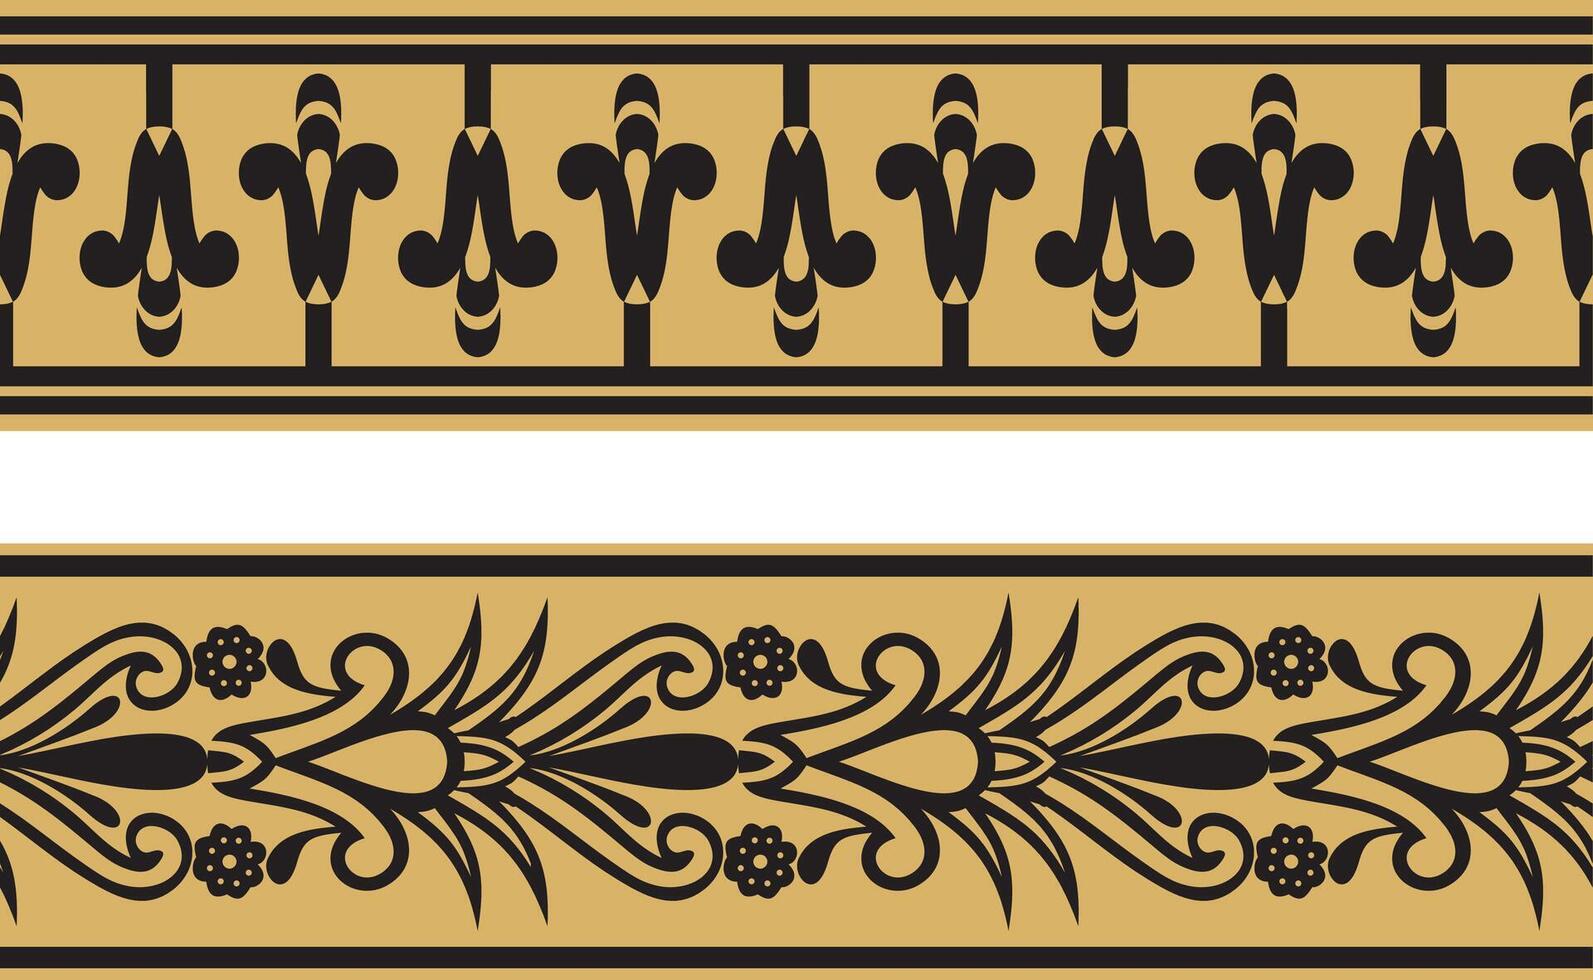 Vektor einstellen von zwei Gold nahtlos ägyptisch Grenze. endlos Ornamente von uralt Ägypten. geometrisch afrikanisch rahmen.